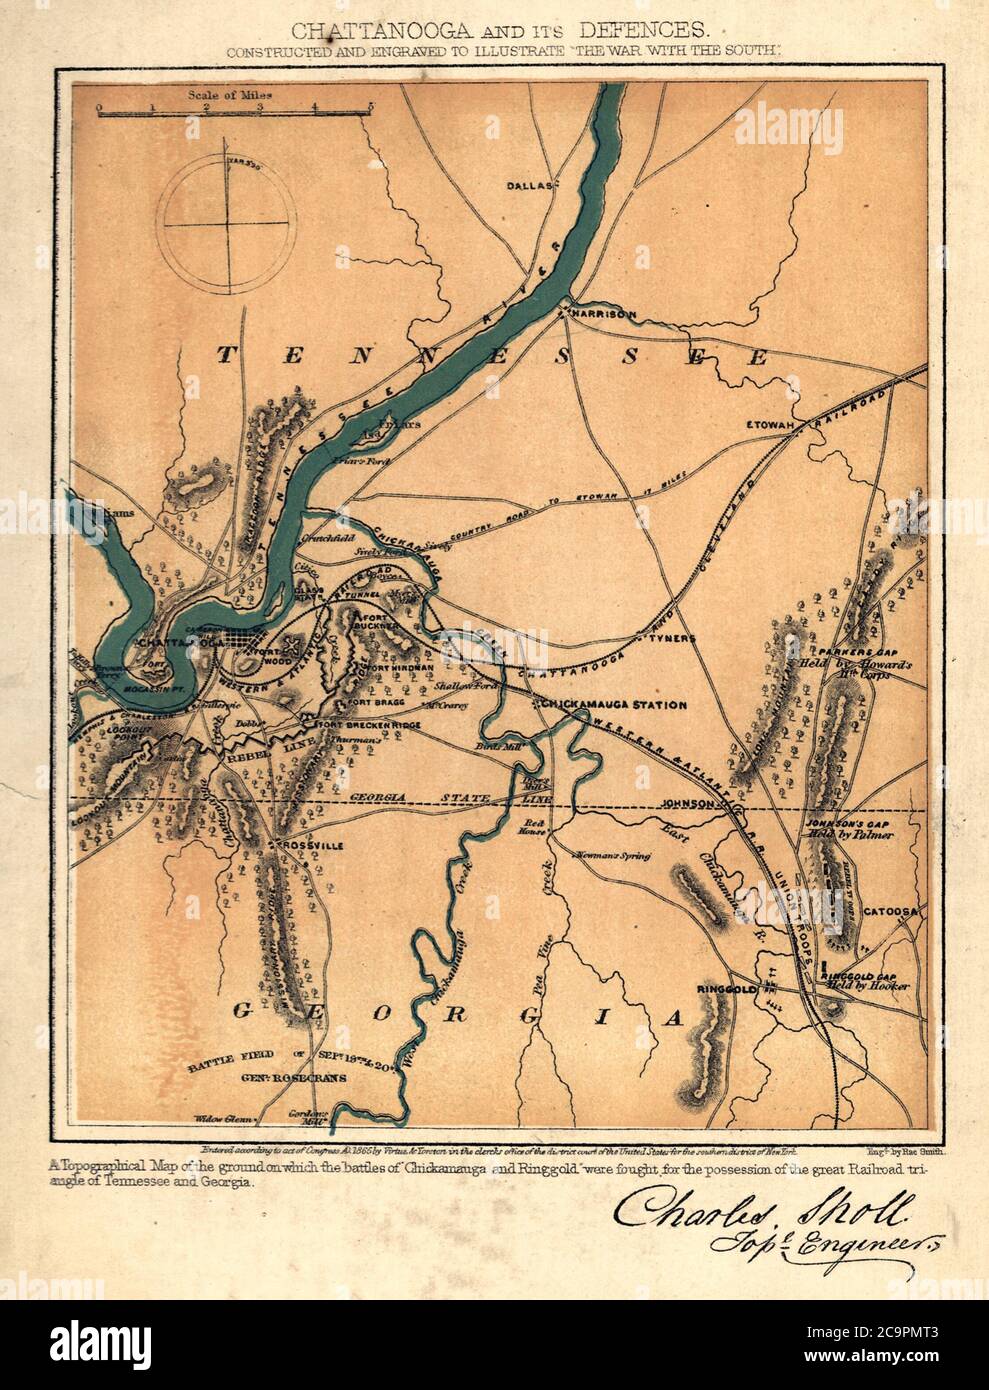 Chattanooga et ses défenses pendant la guerre de Sécession Banque D'Images